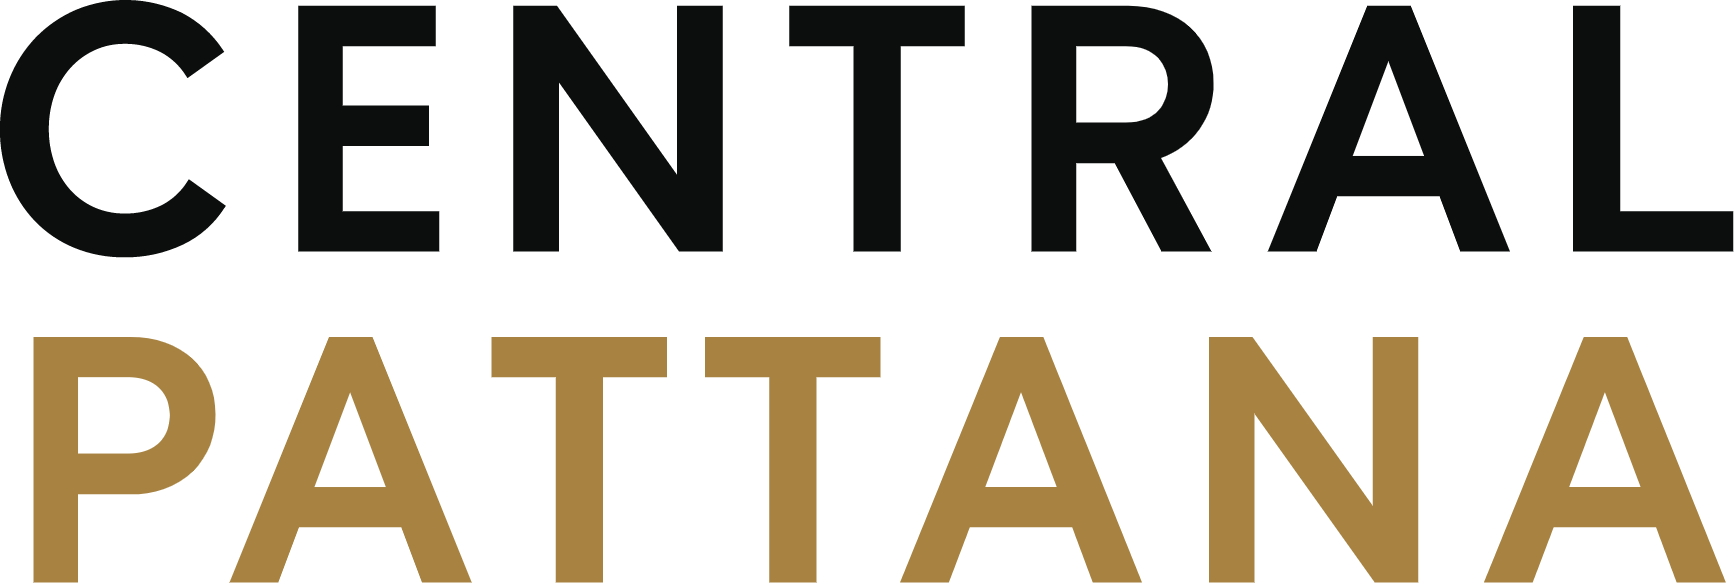 Central Pattana
 logo (transparent PNG)